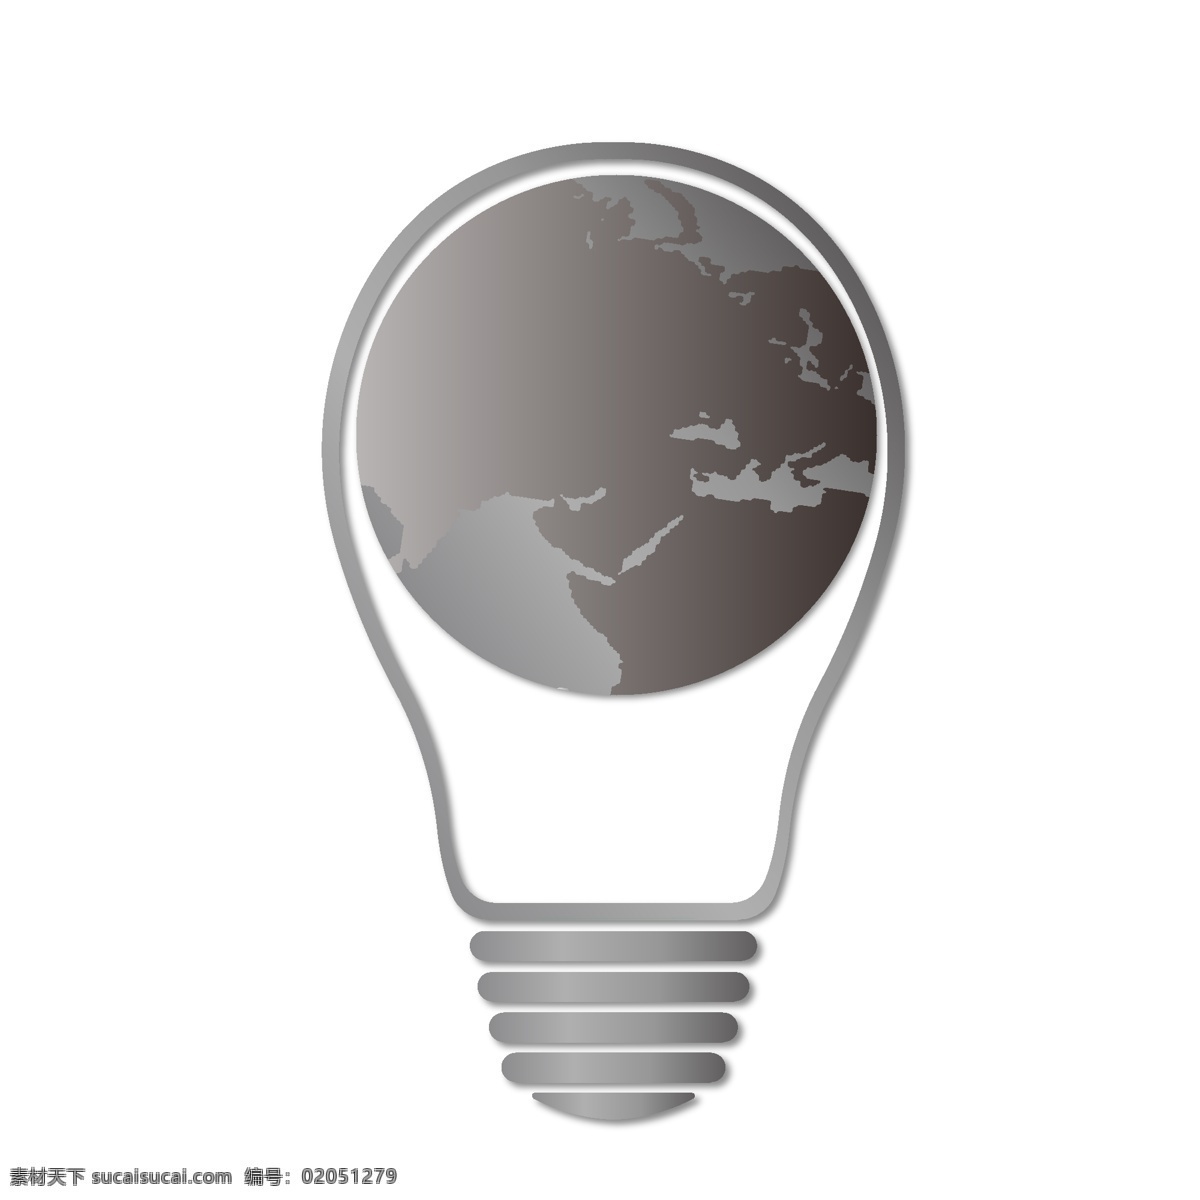 环保 公益 矢量 手绘 插图 地球 熄灯 小时 地球一小时 灯泡 节能 公益插图